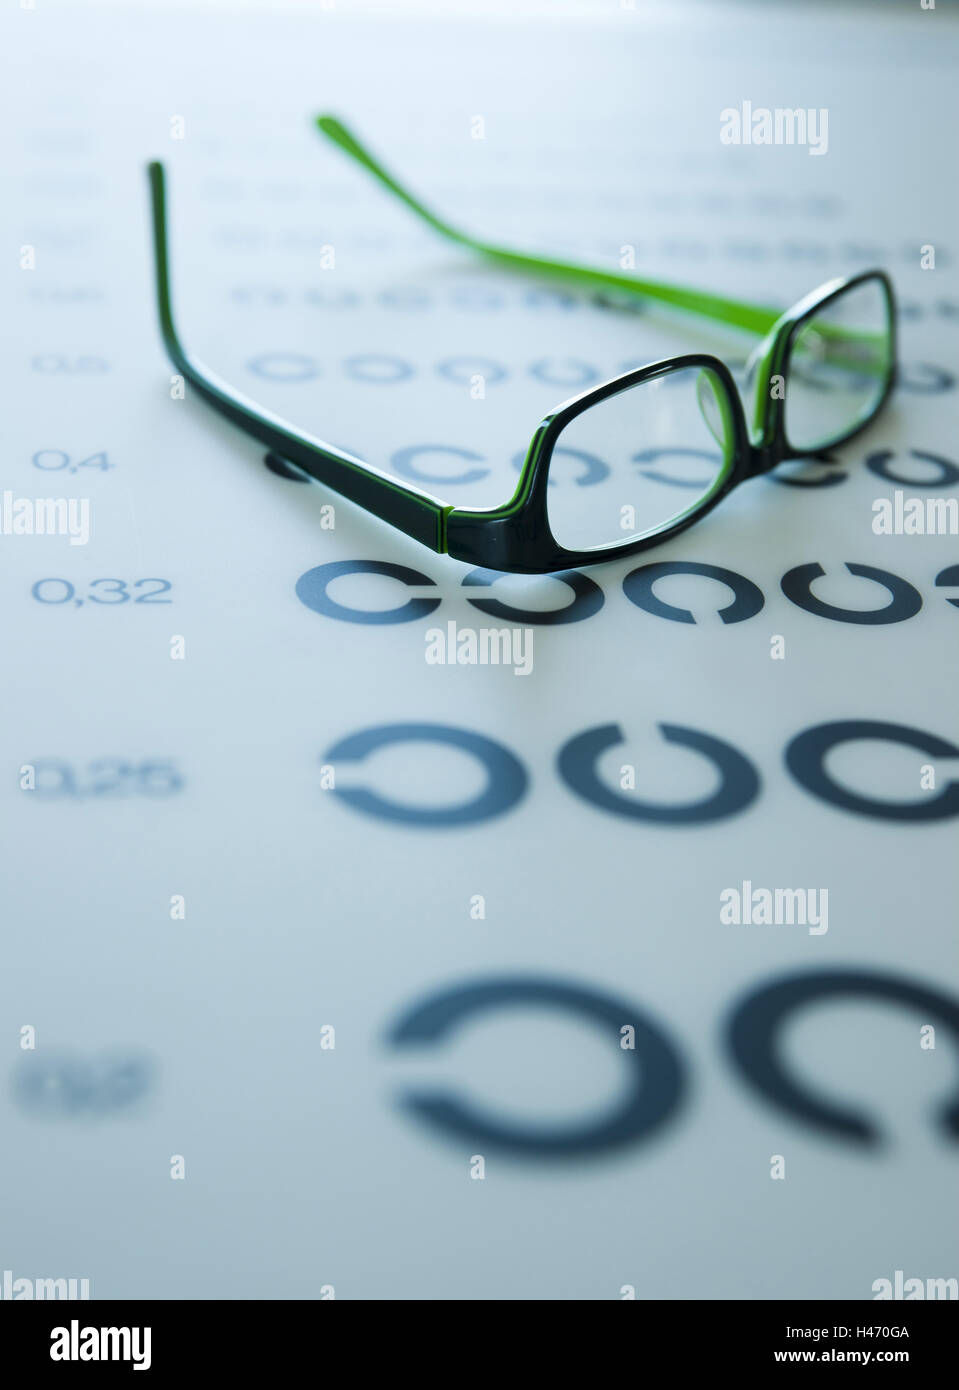 Une paire de lunettes se trouve sur un test visuel d'affichage, Banque D'Images